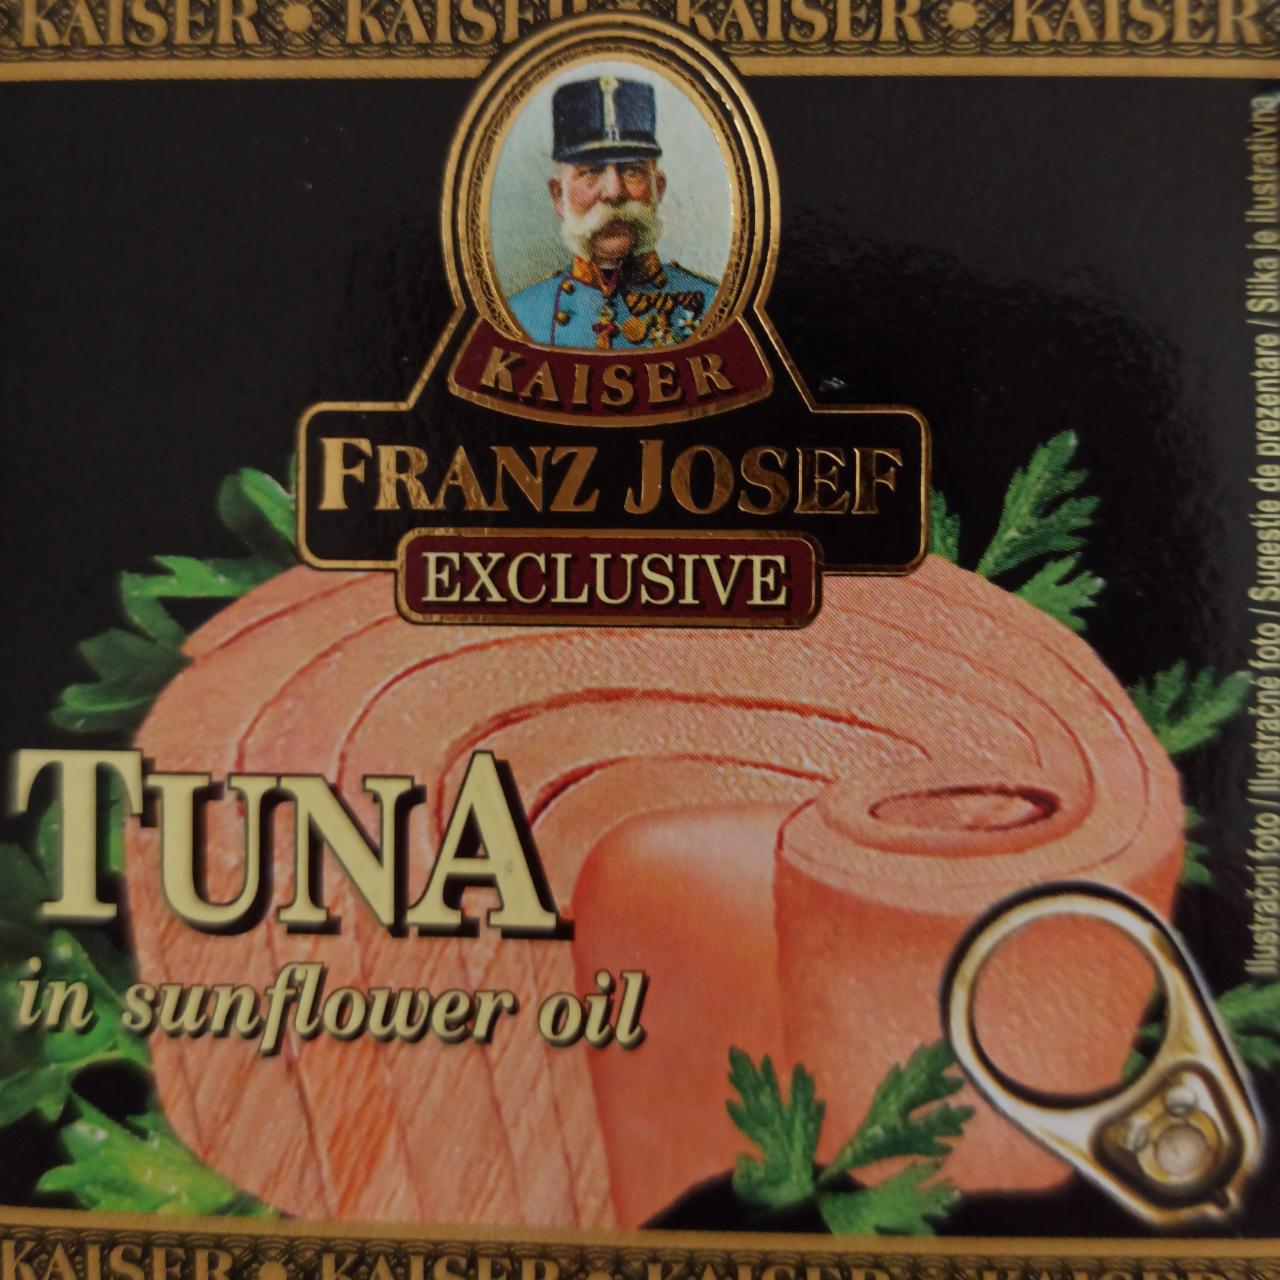 Fotografie - Tuna in sunflower oil Kaiser Franz Josef Exclusive